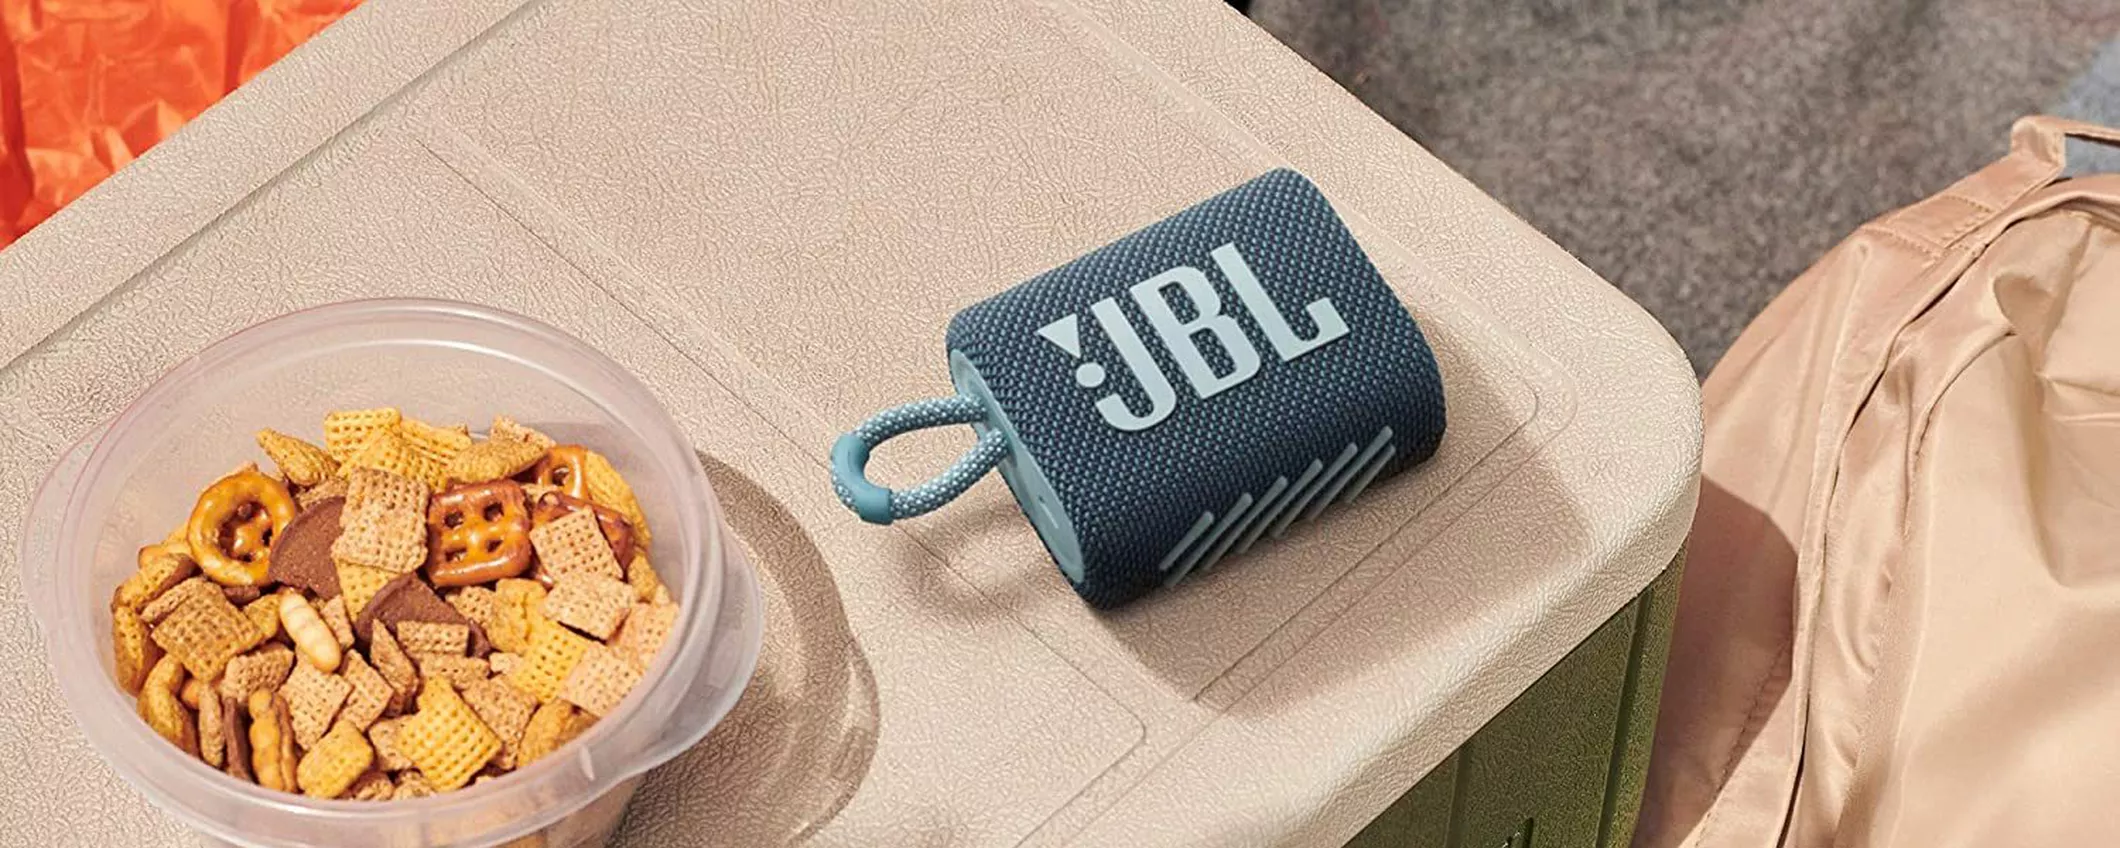 ANIMA la tua FESTA con JBL GO 3, lo speaker portatile più amato dai giovani (29€)